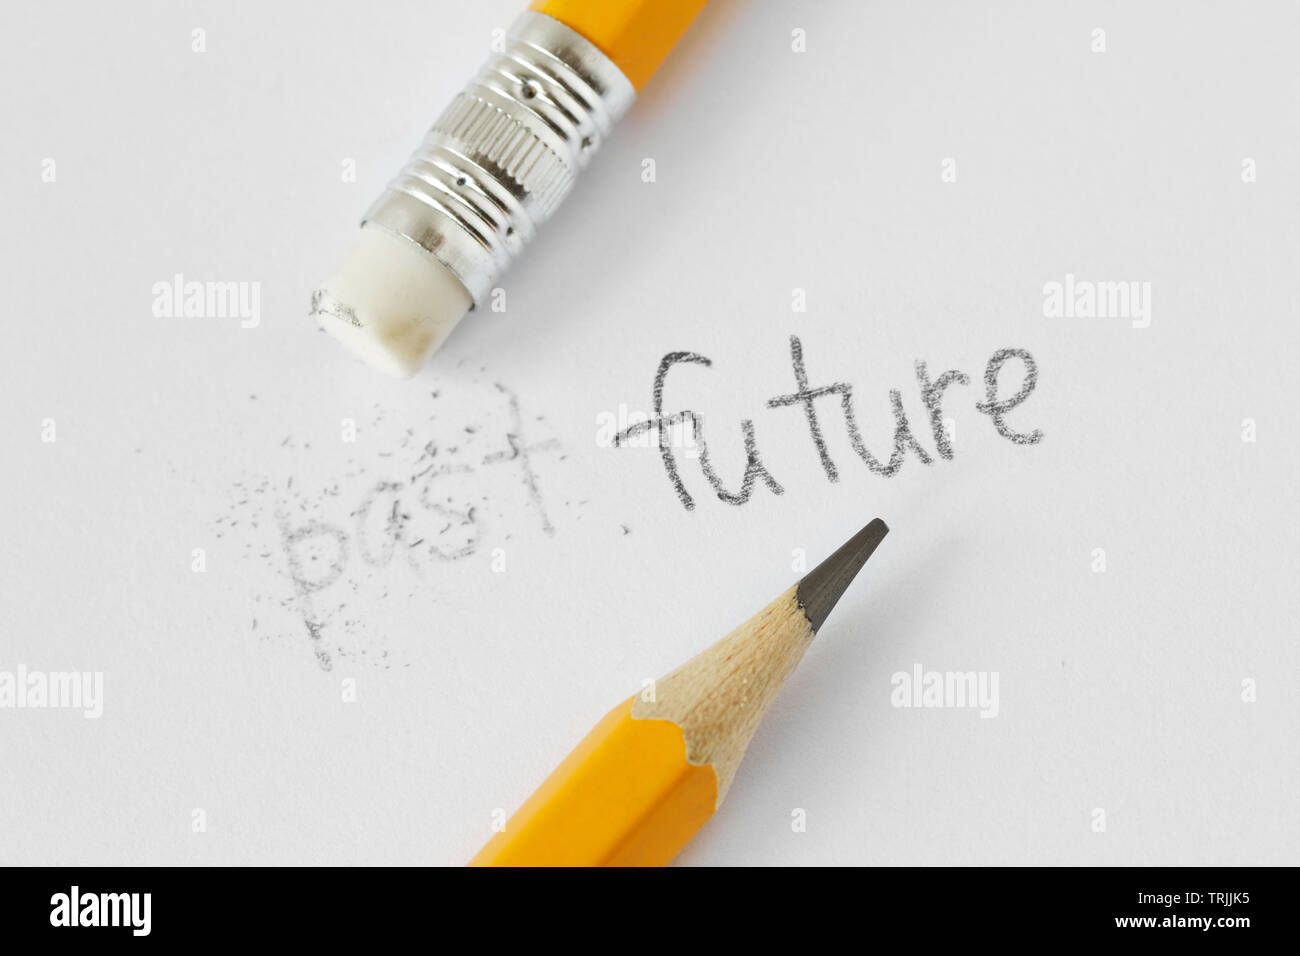 La parola passato cancellate con una gomma e la parola Futuro scritto con una matita su carta bianca - Concetto di tempo, liberando il passato e costruire un futuro Foto Stock